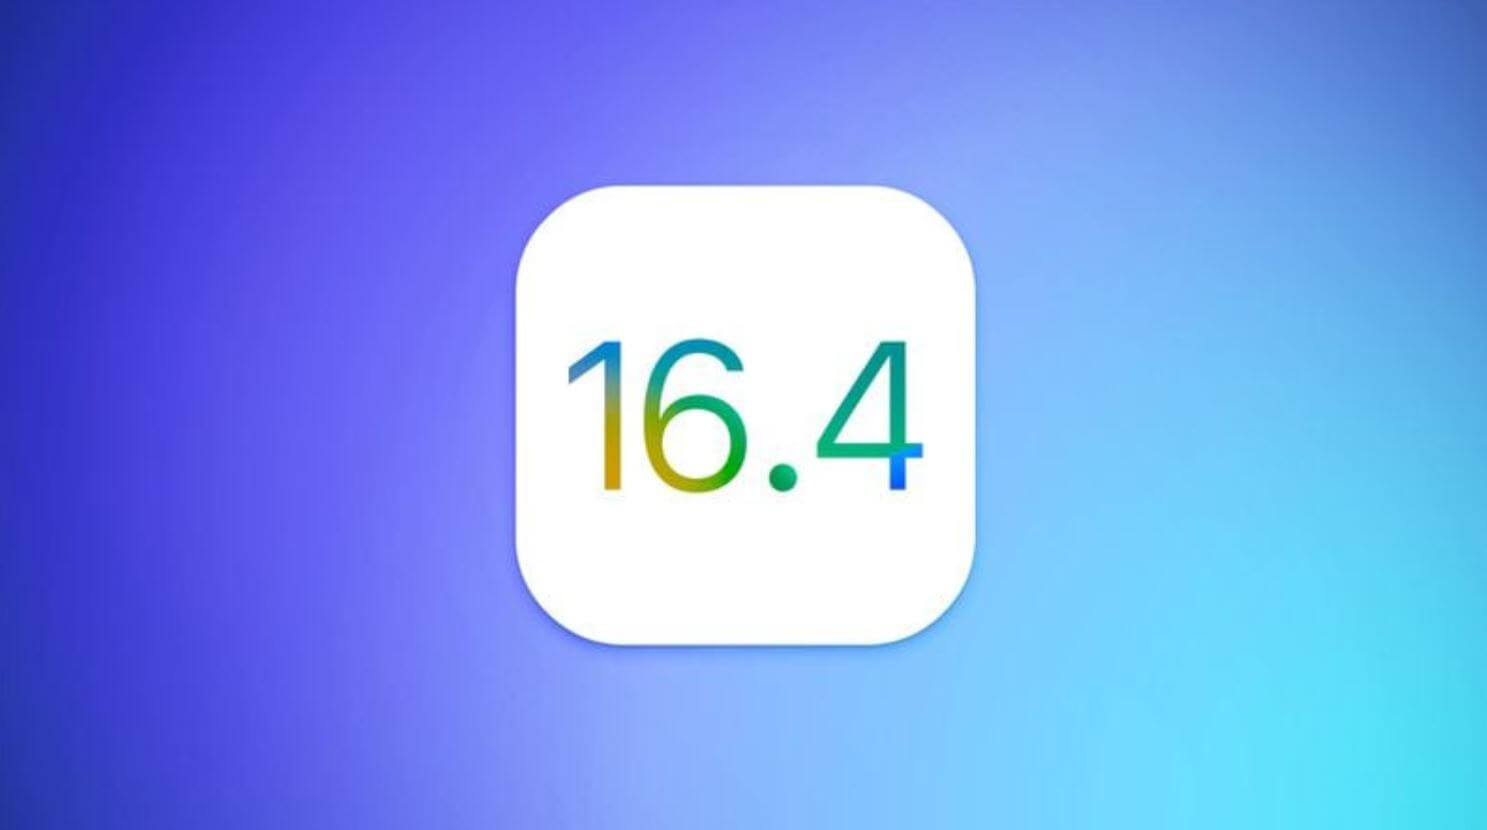 Как установить iOS 16.4 beta 4. Вышла новая бета-версия iOS 16.4. Как установить? Фото.